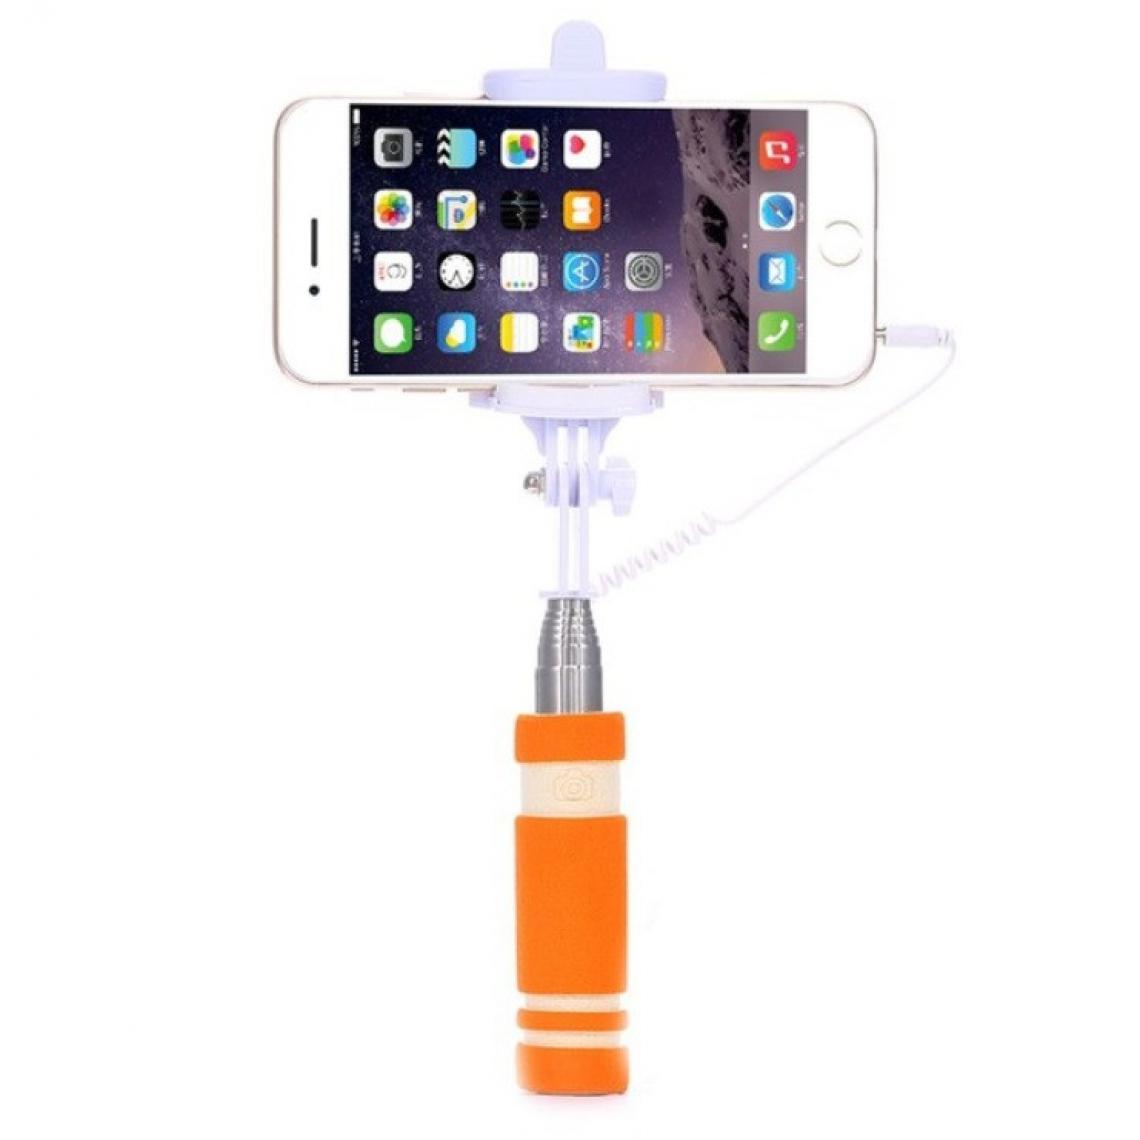 Shot - Mini Perche Selfie pour "XIAOMI Redmi 9" Smartphone avec Cable Jack Selfie Stick Android IOS Reglable Bouton Photo (ORANGE) - Autres accessoires smartphone